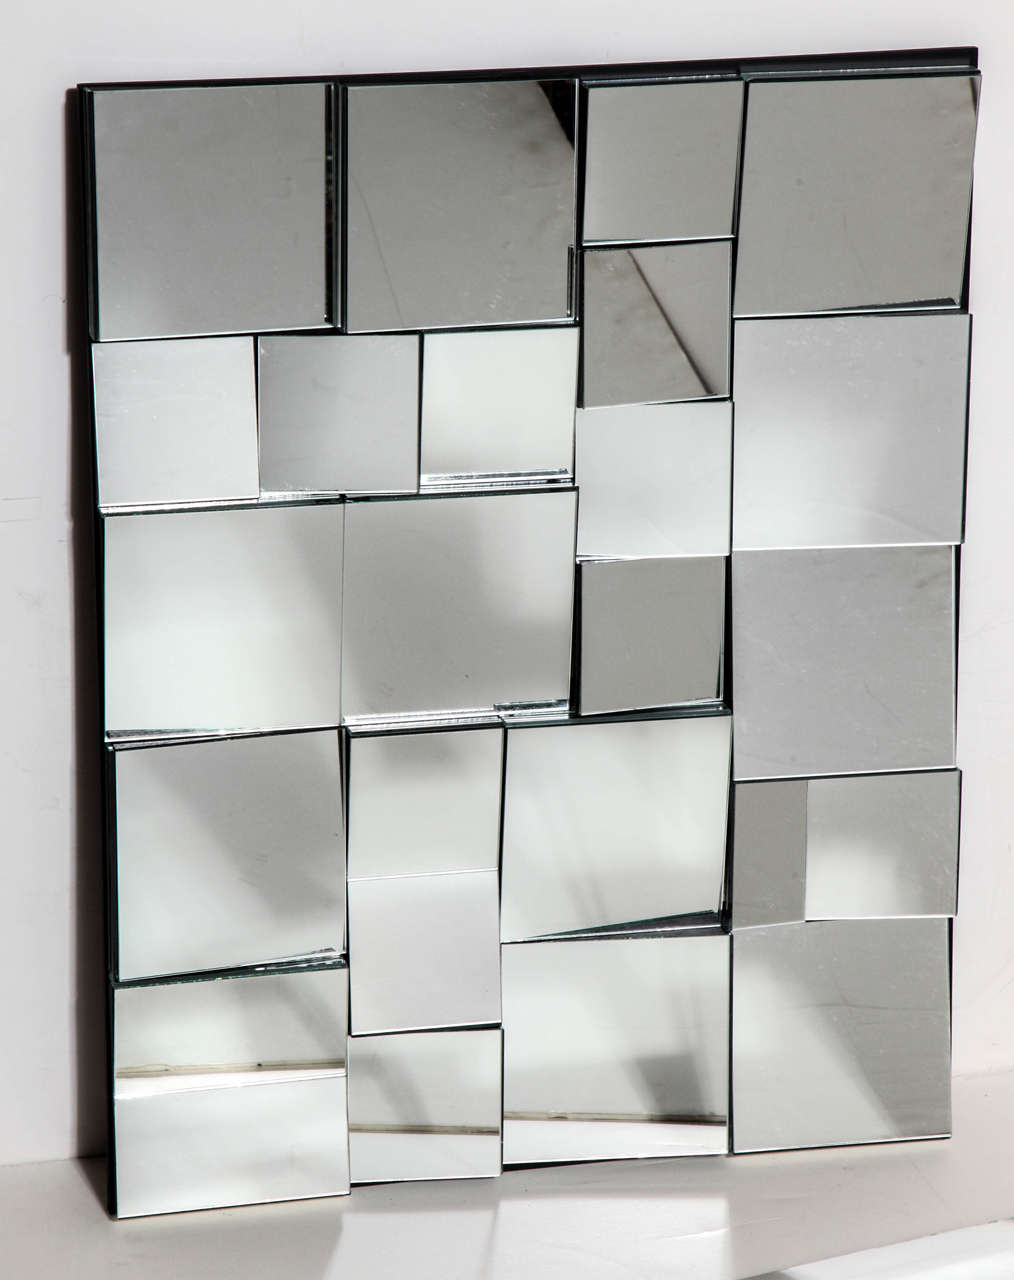 Neal Small facettiert Smaller Slopes Spiegel aus 2000 Limited Edition Serie von 35. Mit mehreren Spiegelformen auf schwarz lackiertem Holzrahmen. Nummer 25 in einer Serie von 35. Horizontal oder vertikal aufhängen. Niemals aufgehängt. Während seiner